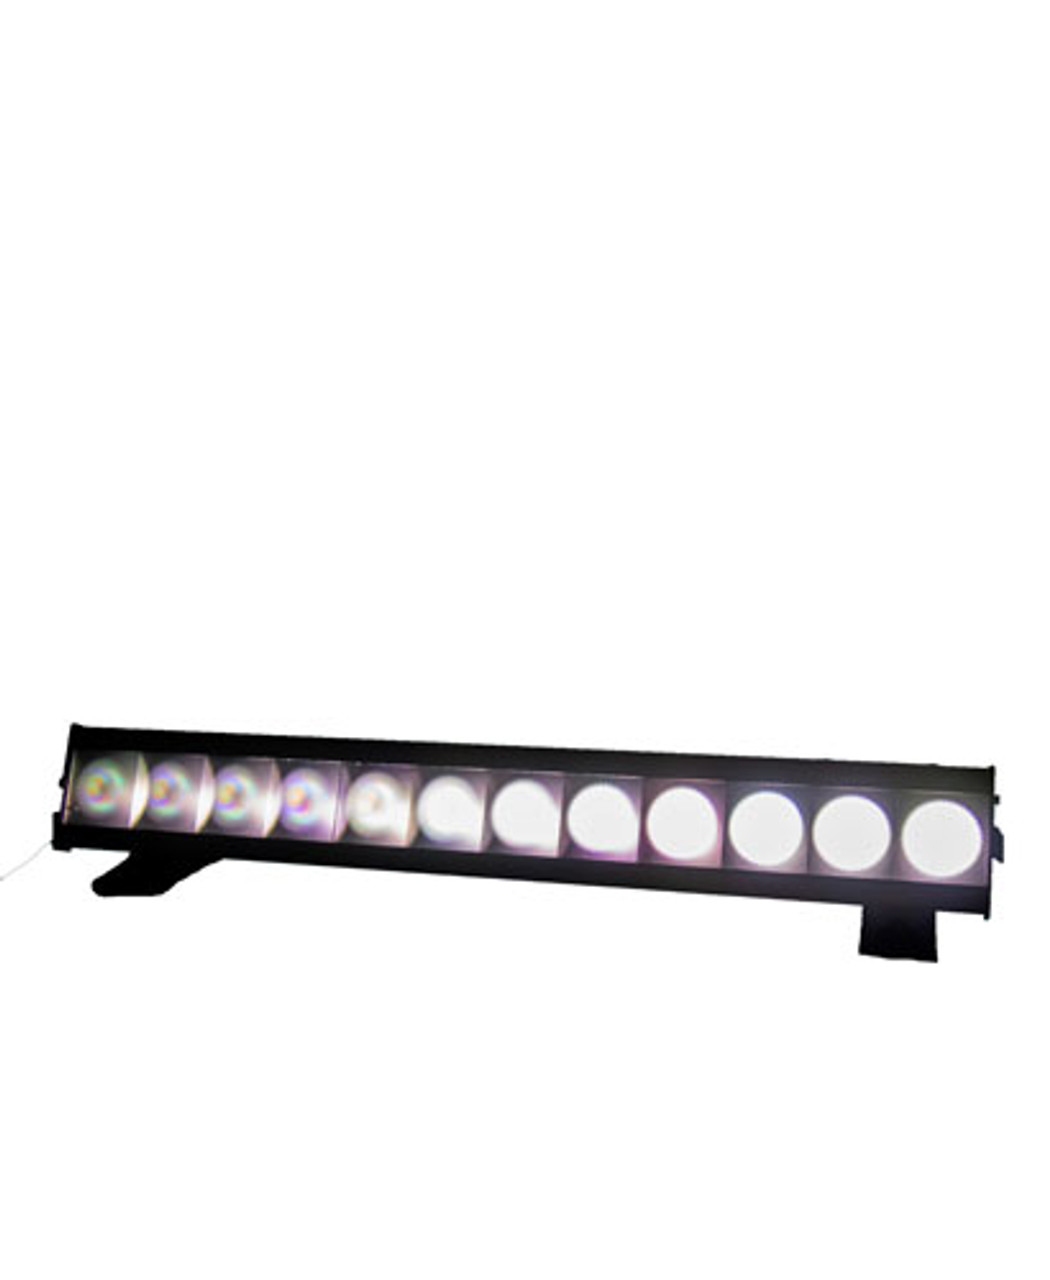 Strand Lighting Aurora 12 Full Color RGBALC LED Strip | LED Batten-style